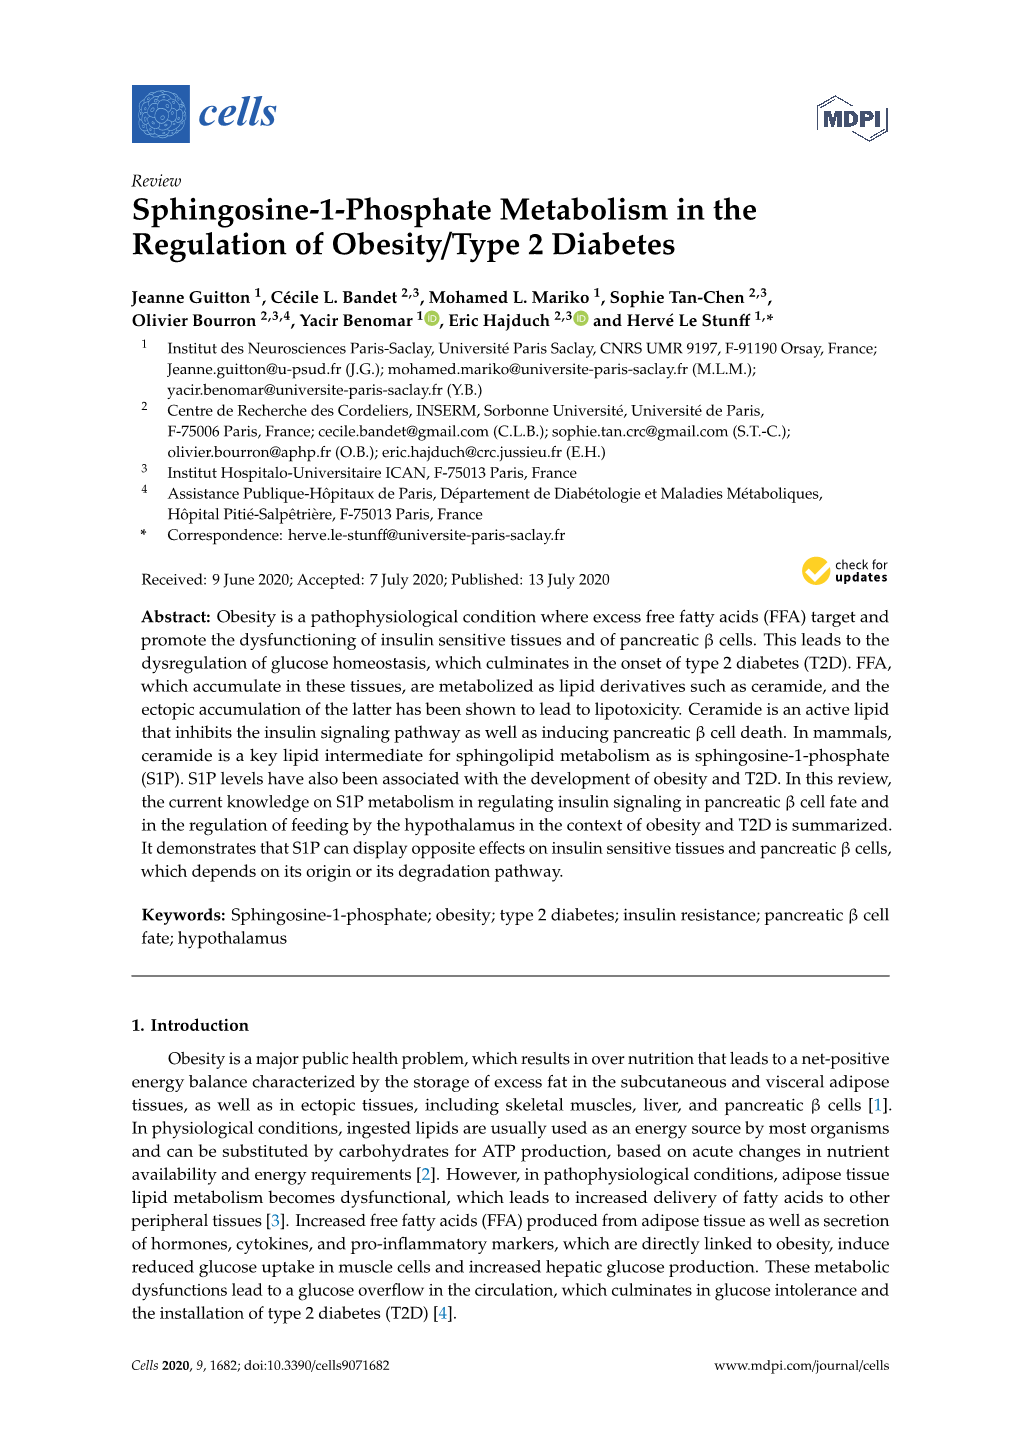 Sphingosine-1-Phosphate Metabolism in the Regulation of Obesity/Type 2 Diabetes